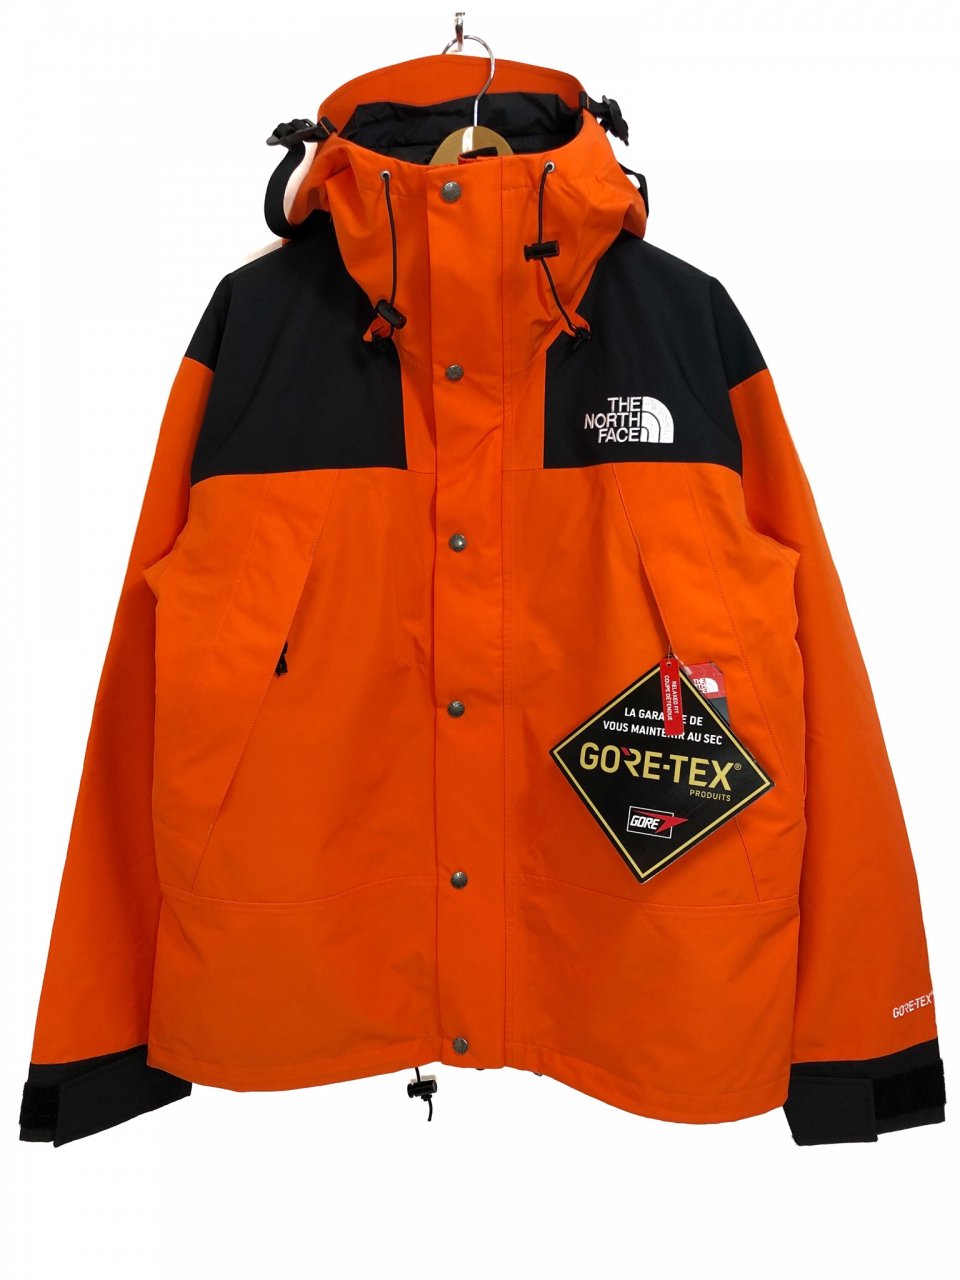 日本未発売 THE NORTH FACE 1990 Mountain Jacket GORE-TEX (ORANGE